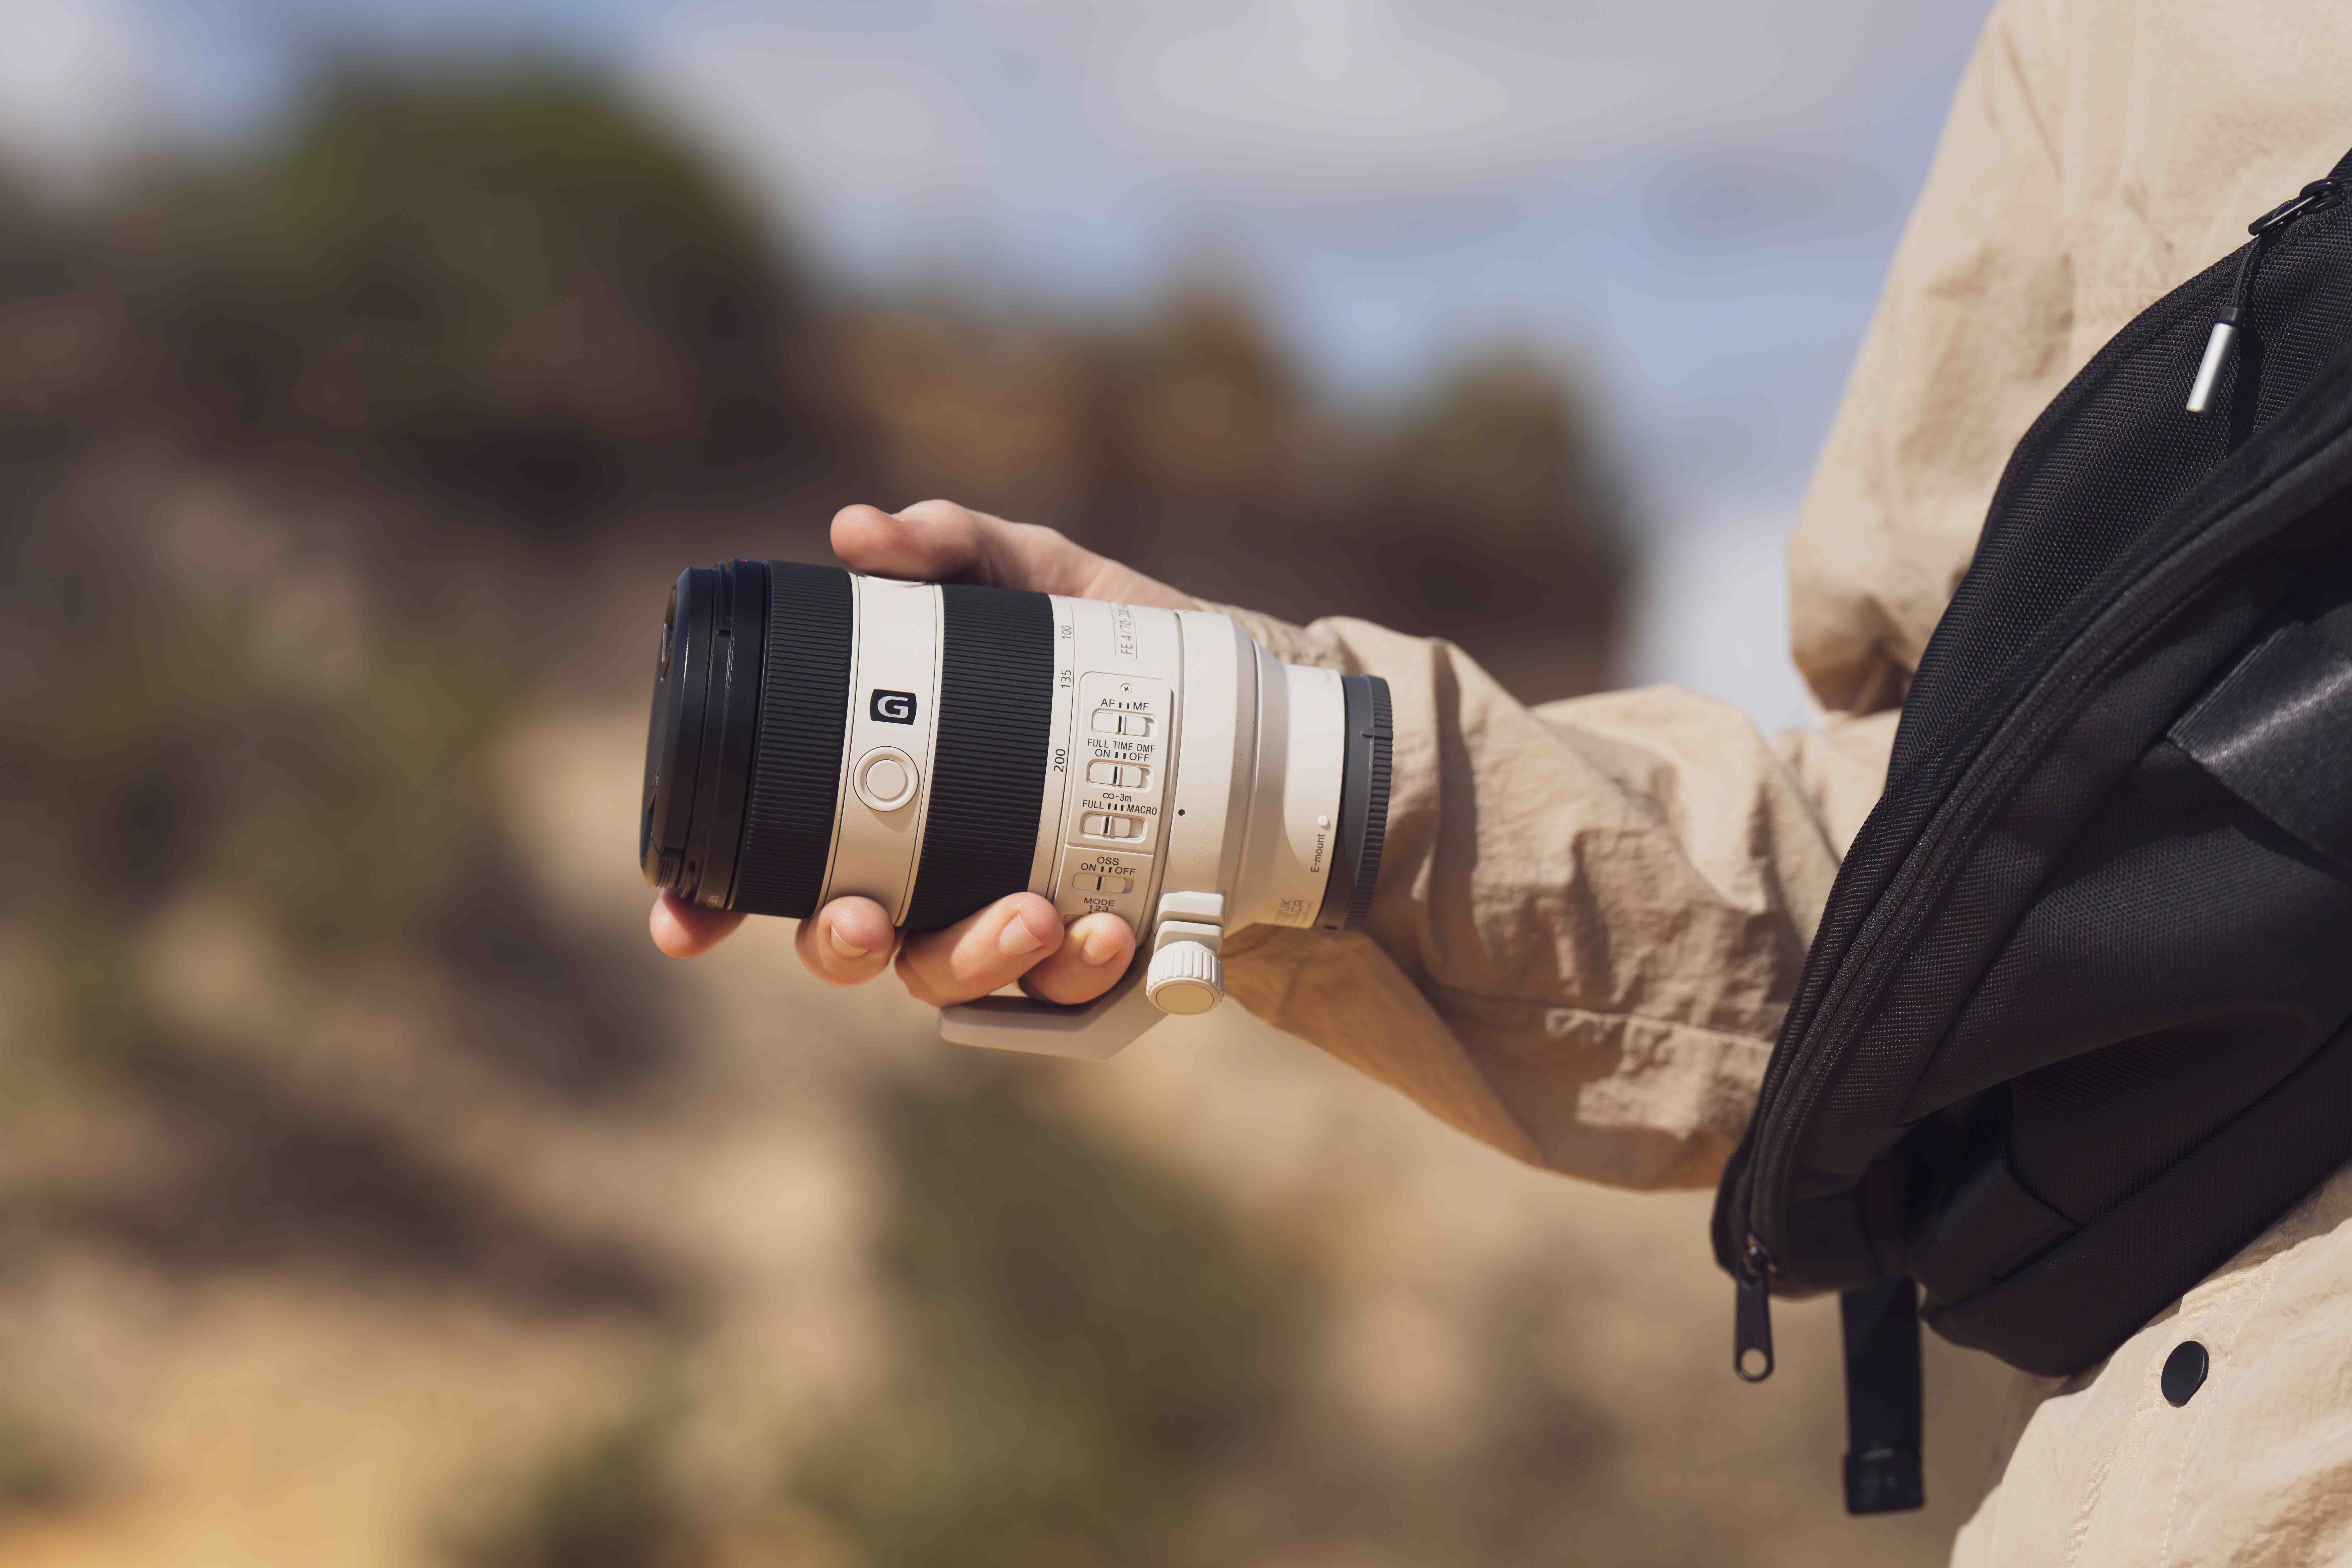 Sony 全新 FE 70-200mm F4 Macro G OSS II 全片幅望遠微距變焦鏡頭 輕巧設計、優異畫質與自動對焦性能、兼具微距與望遠多元拍攝 @3C 達人廖阿輝